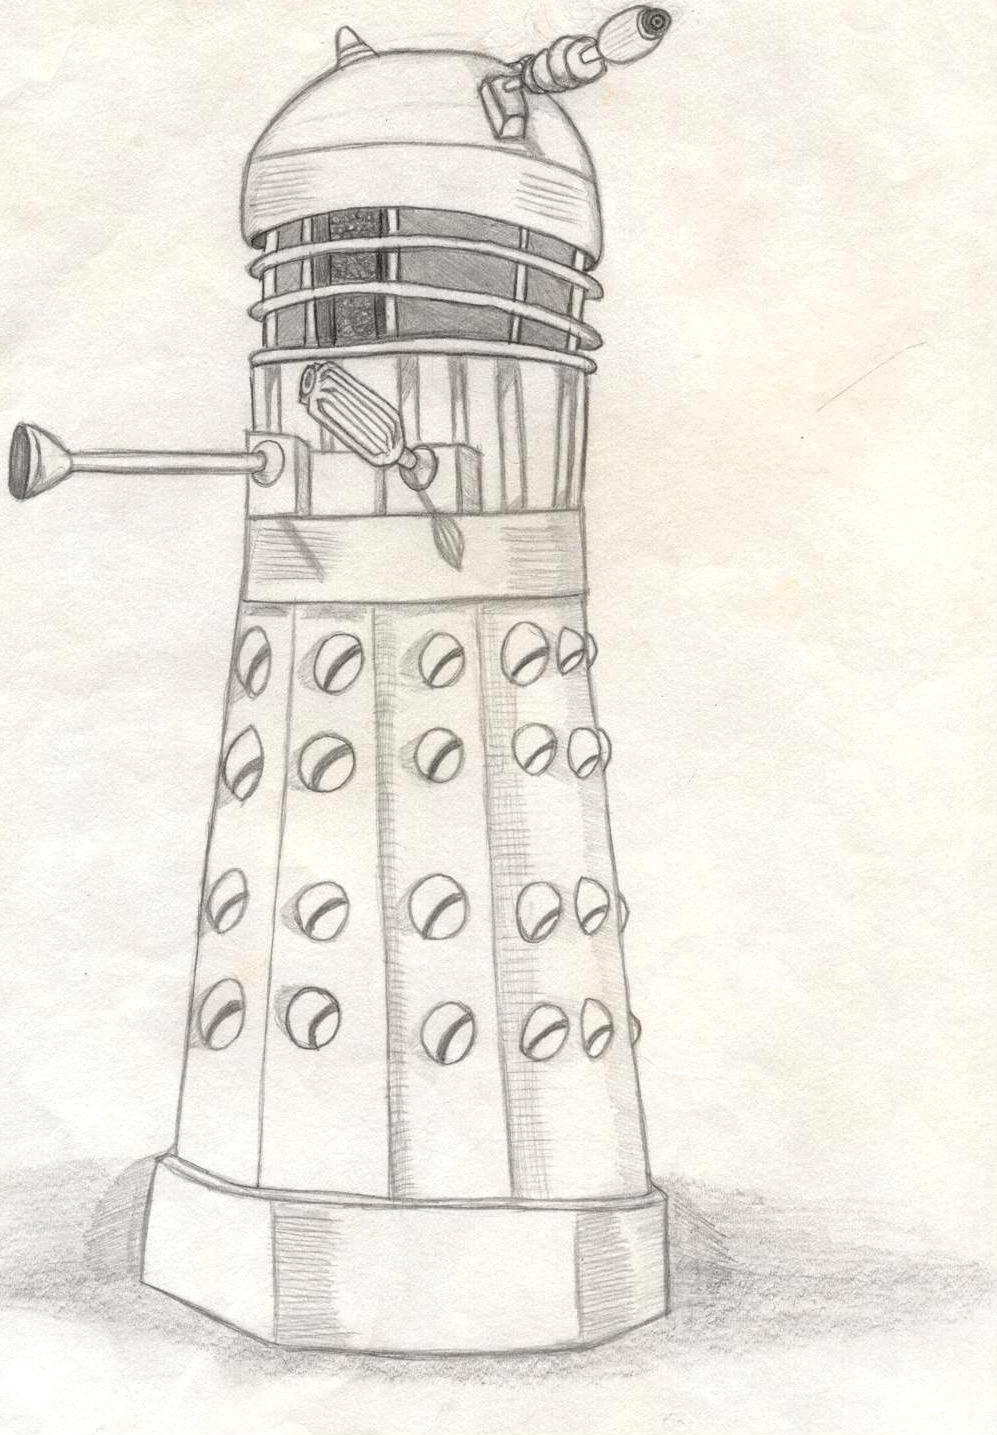 Random Dalek by Ran_The_Hyena